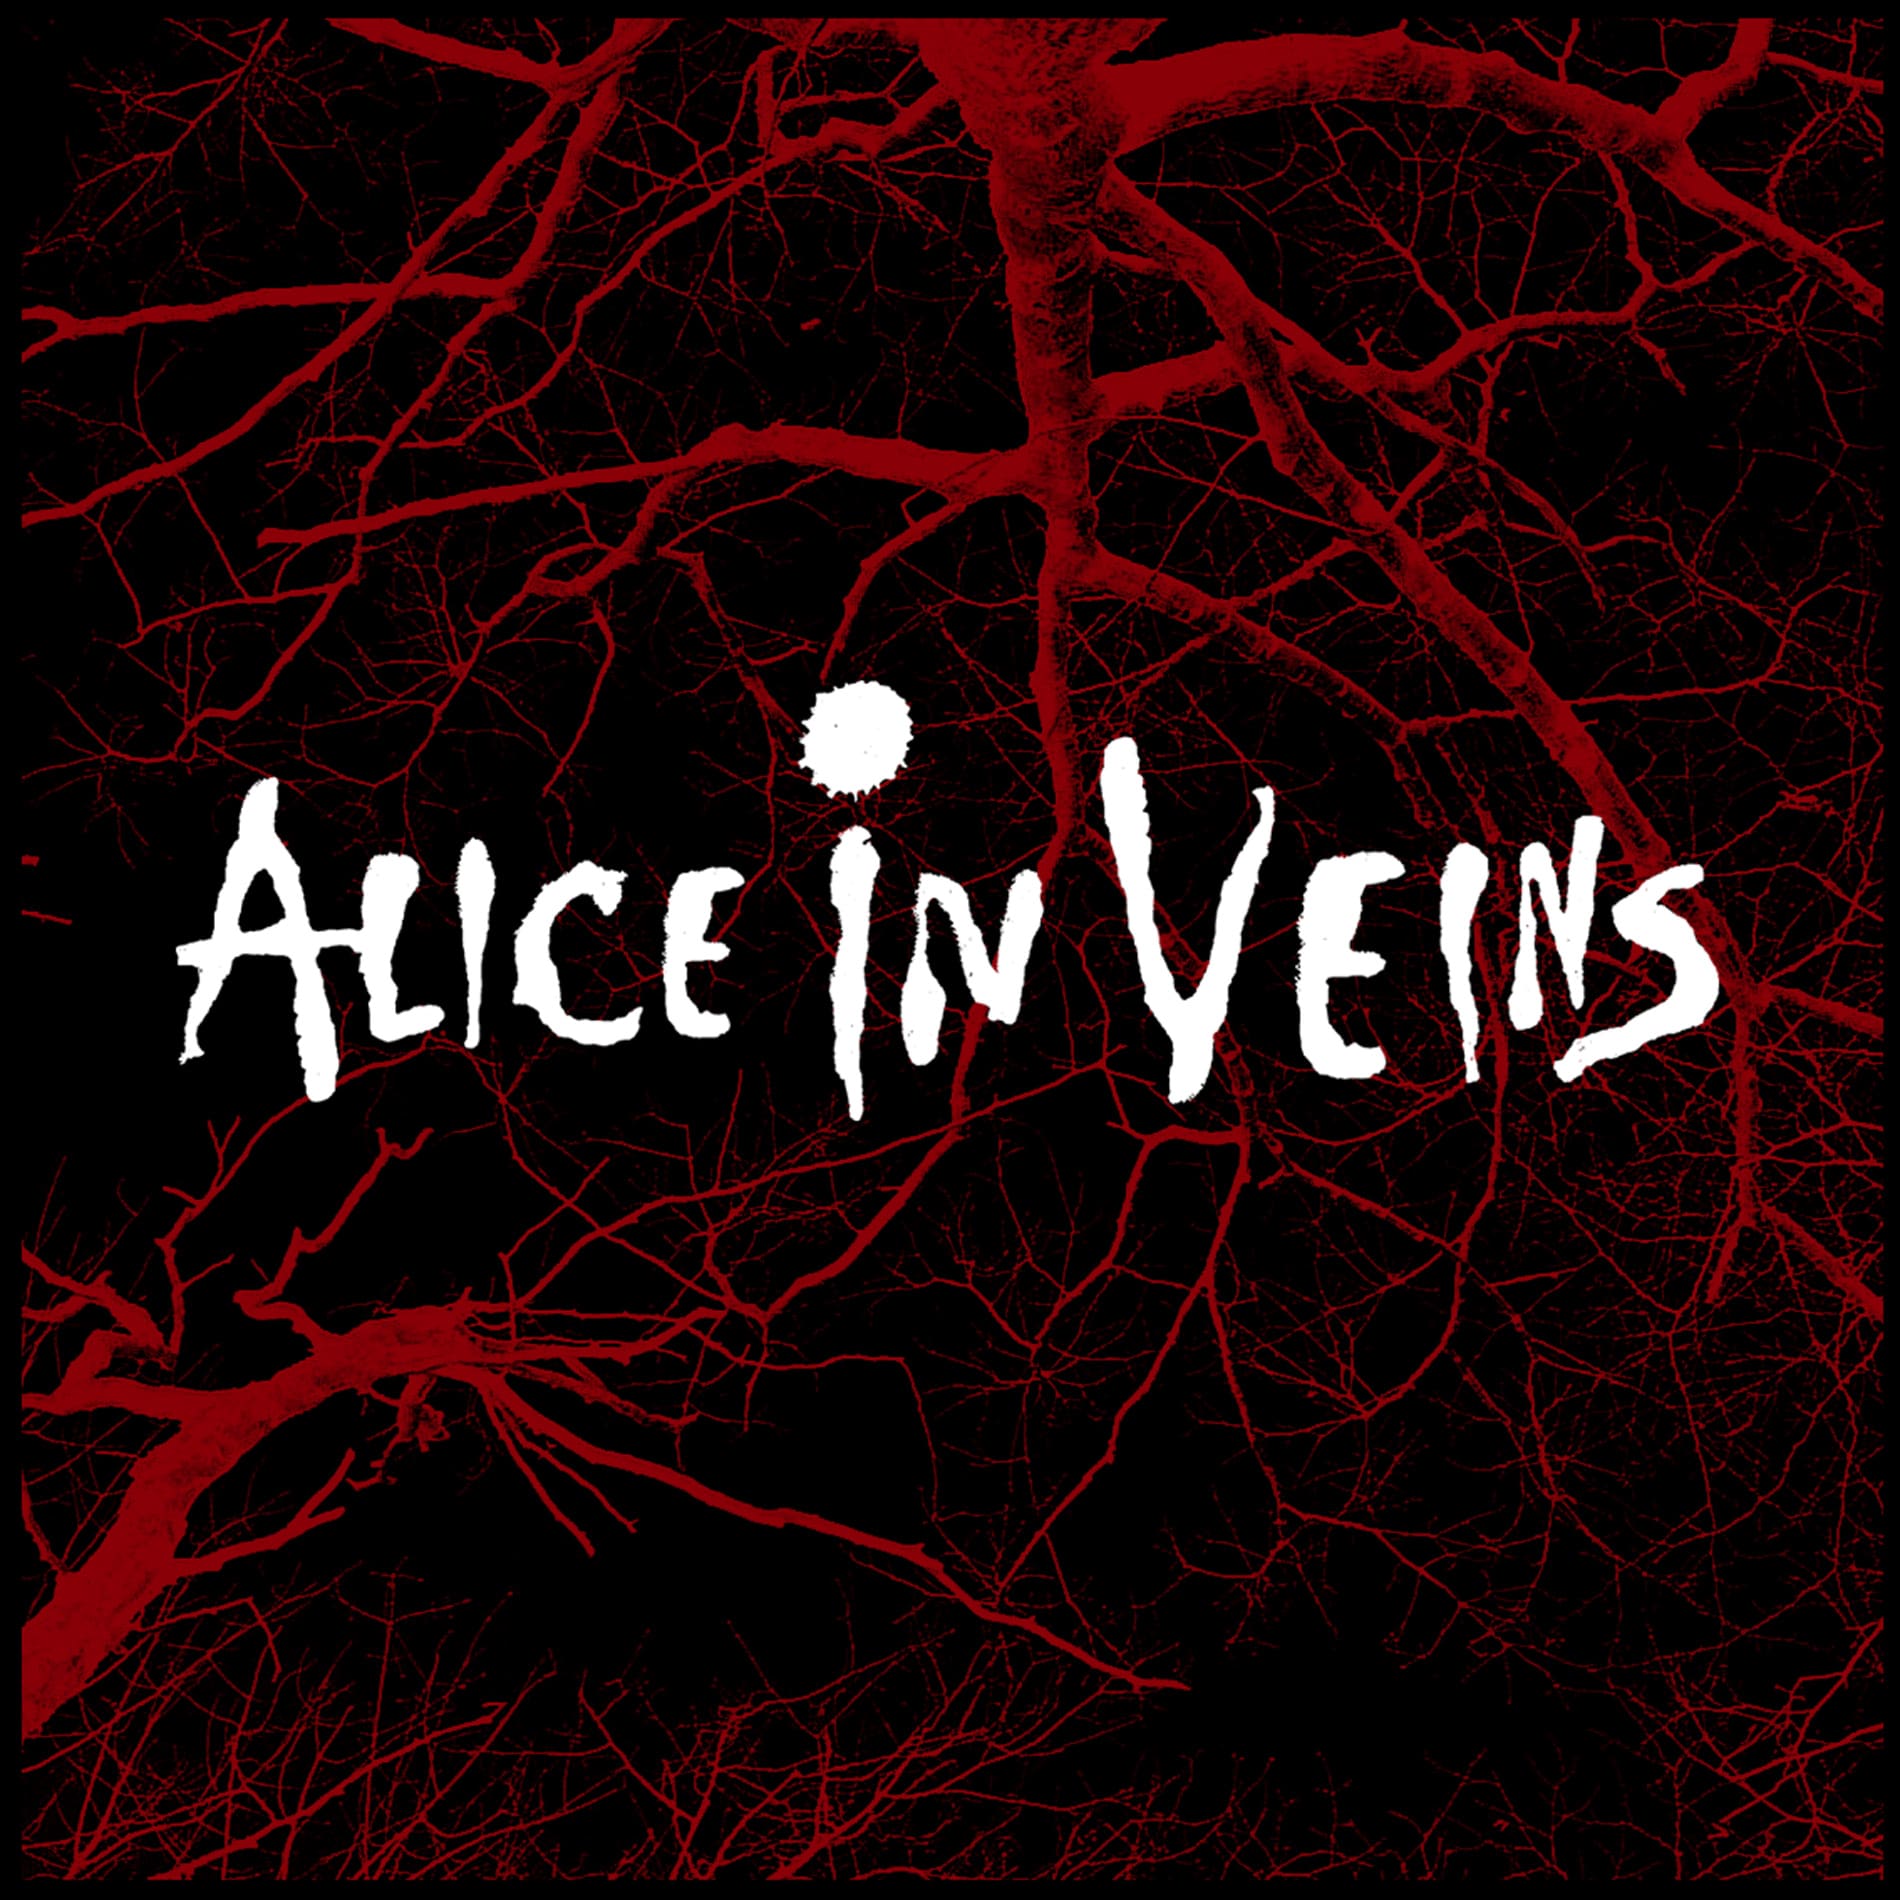 Alice in Veins